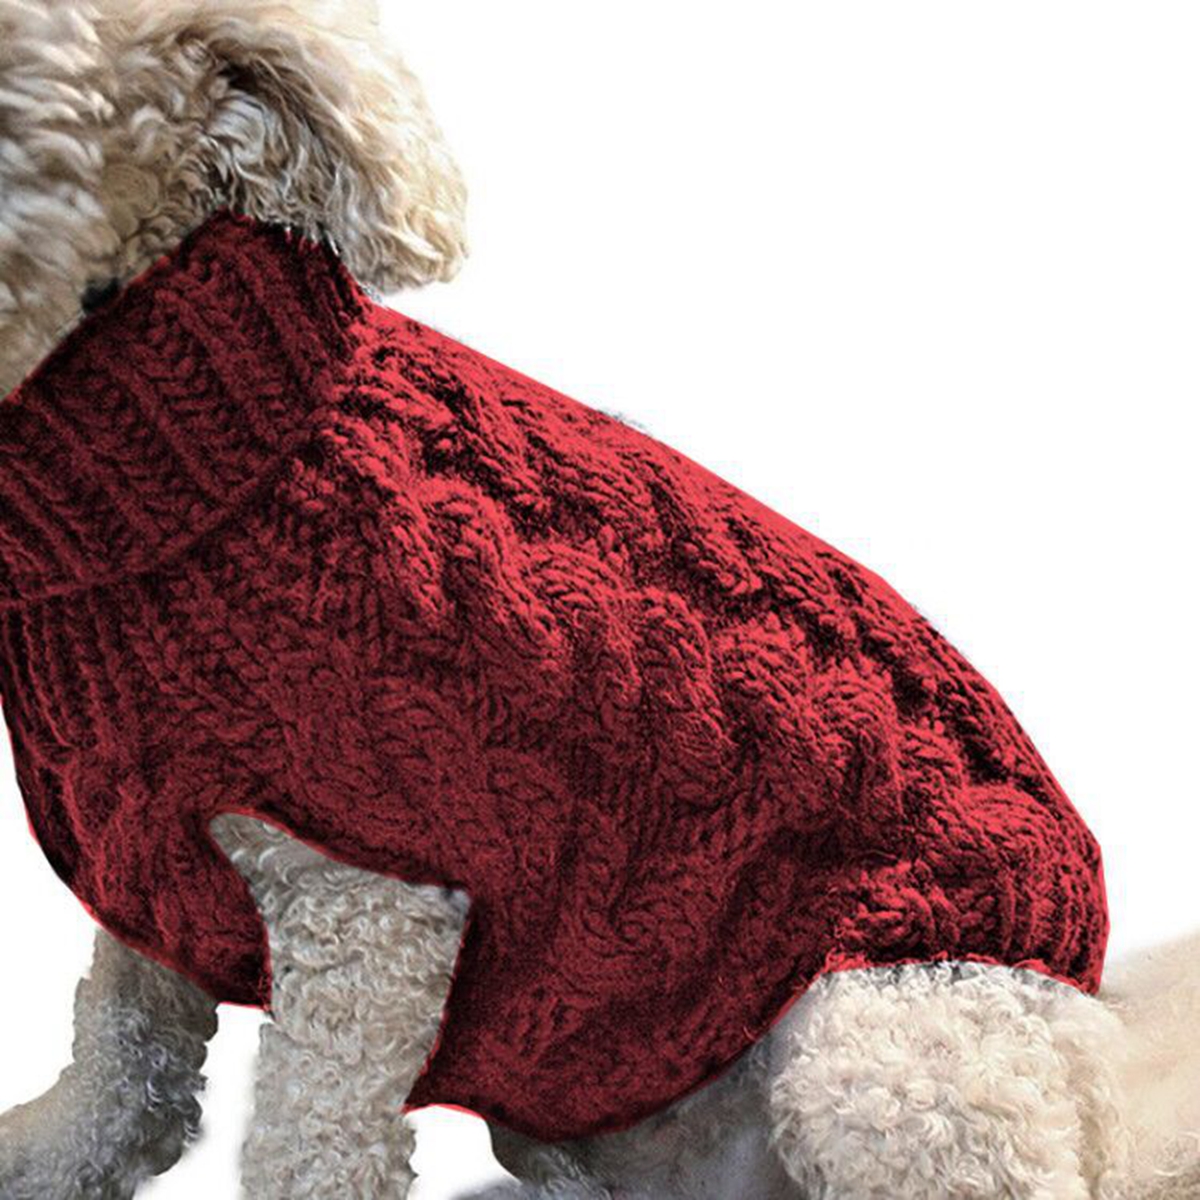 Pet-Vest-Jacket-Pet-Knit-Sweater-Dog-Cat-Puppy-Coat-Warm-Clothes-1631375-7